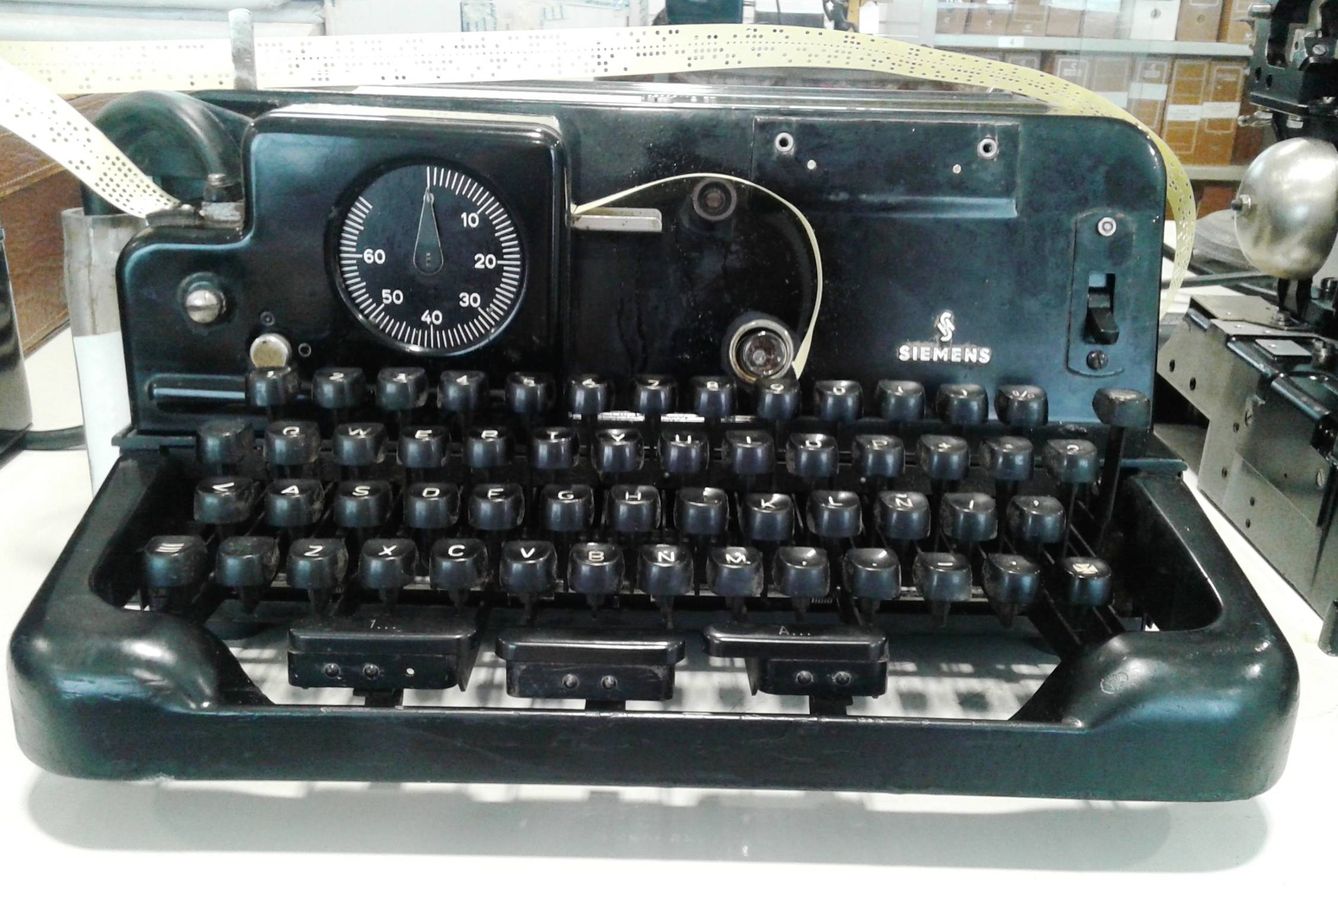 Perforadora Siemens de 1950. Los mensajes se agujereaban en la cinta que salía detrás del teclado. (Imagen: cedida por Victoria Crespo)